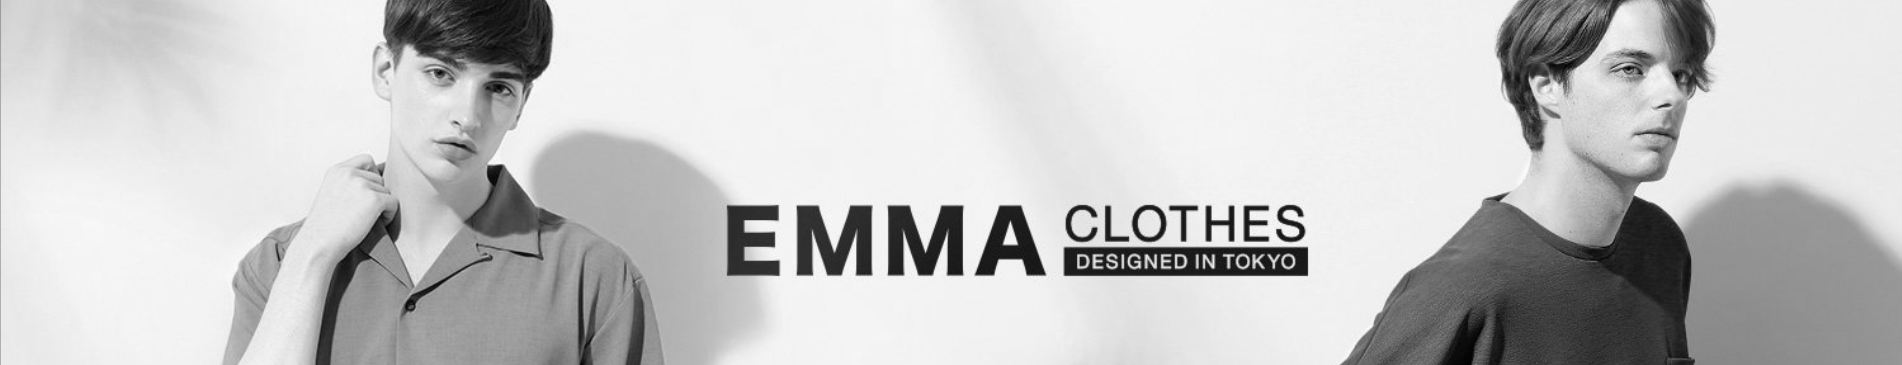 EMMA CLOTHESのイメージ価格帯、年齢層まとめ image 1